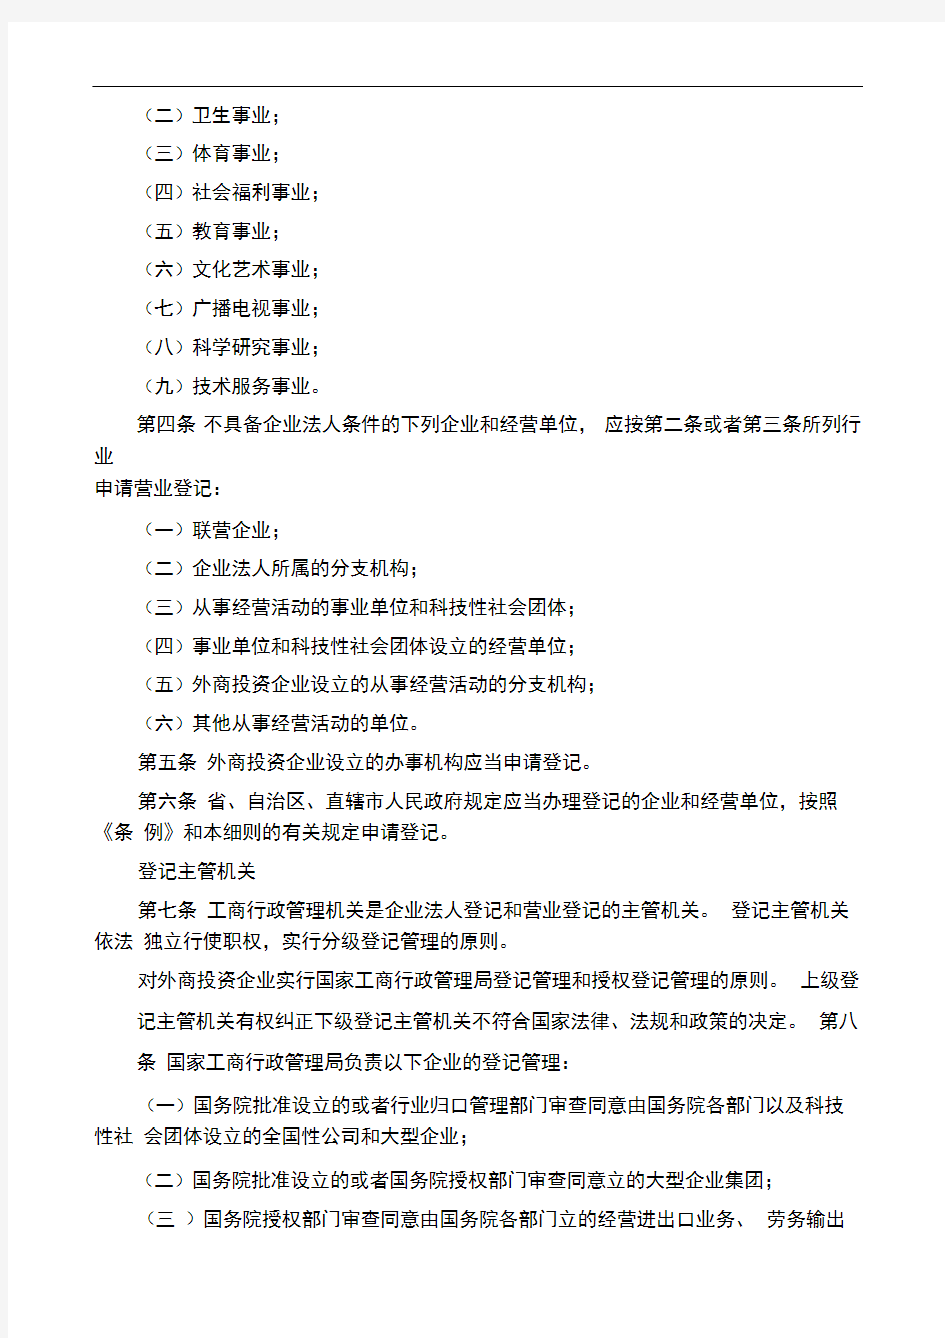 中华人民共和国企业法人登记管理条例施行细则